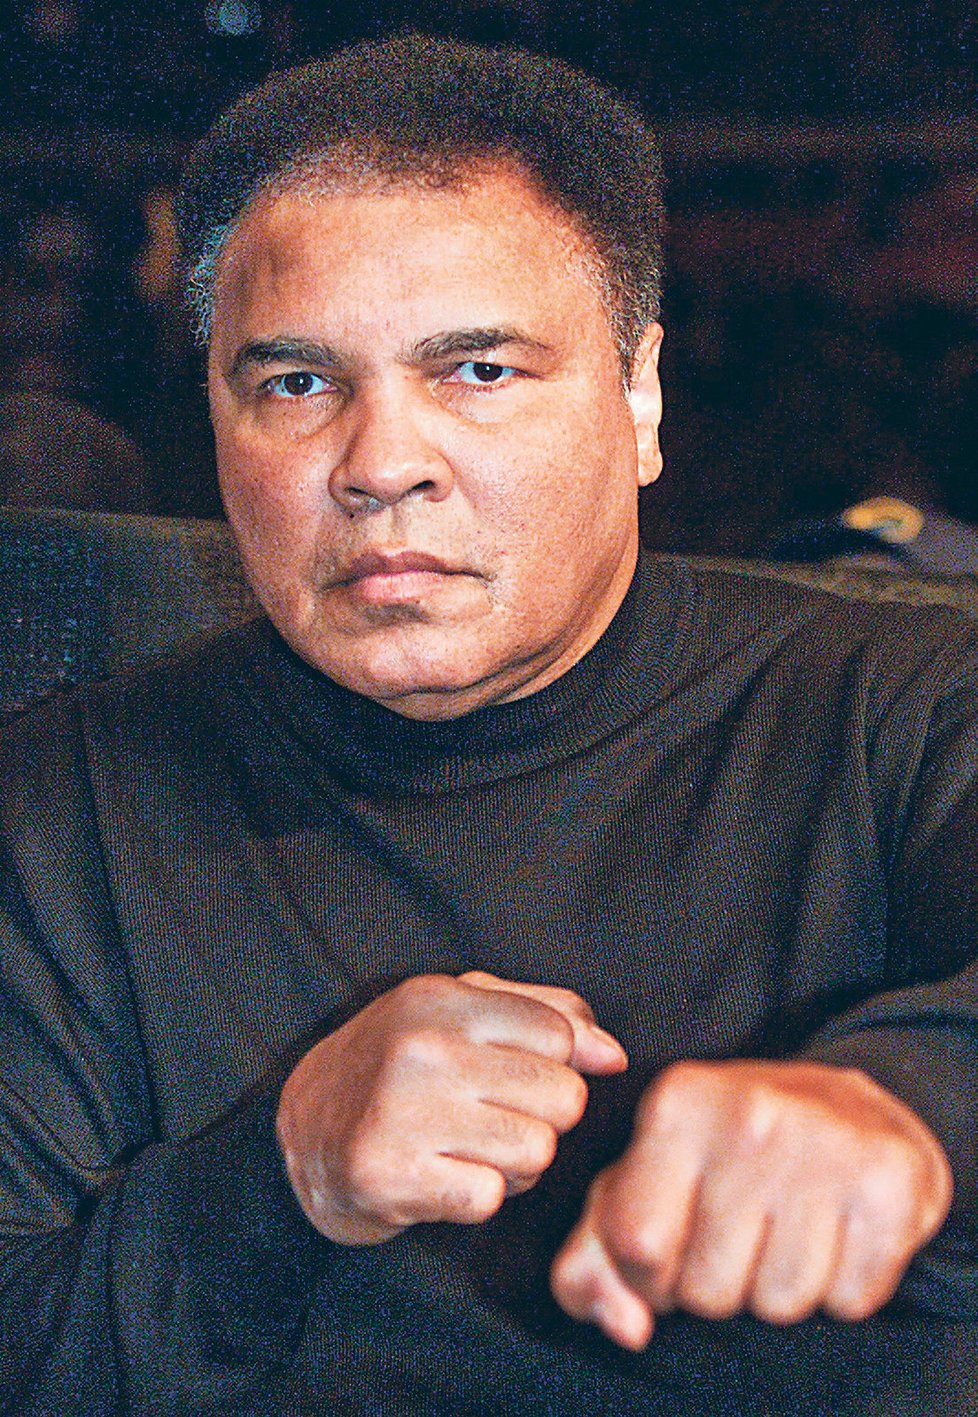 Ani boxer Muhammad Ali (71) neunikl nepříjmené diagnóze.